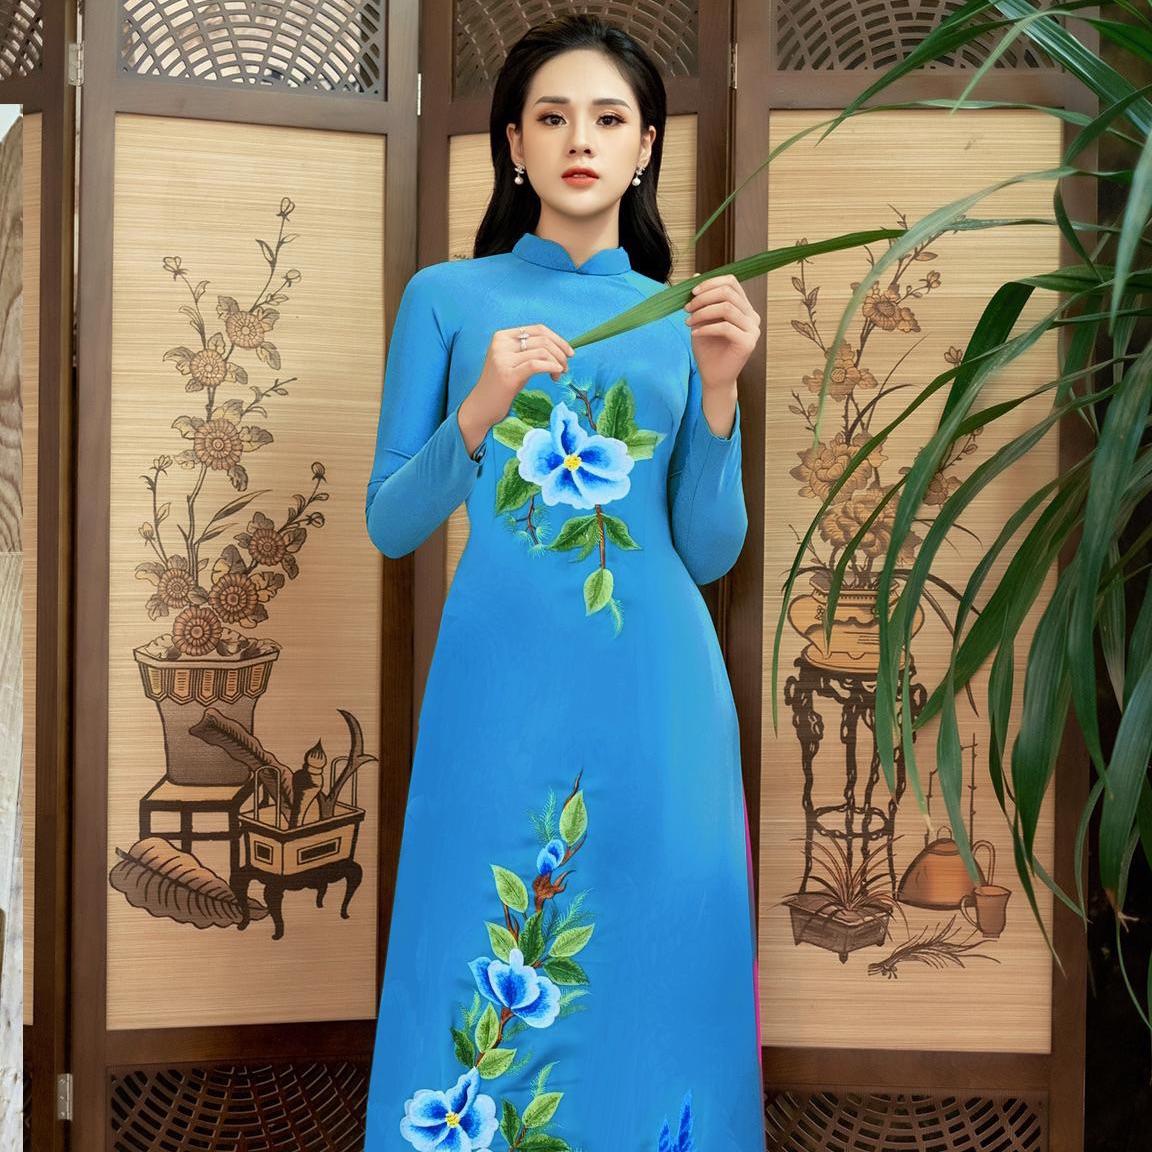 Áo dài thêu hoa tinh tế là trang phục mang đậm nét văn hóa truyền thống của người Việt Nam. Với sự tinh tế trong thiết kế cùng cách thêu hoa độc đáo, chiếc áo dài sẽ khiến bạn trông thật quý phái và đẳng cấp. Hãy chiêm ngưỡng hình ảnh đẹp lung linh của áo dài thêu hoa tinh tế ngay bây giờ!